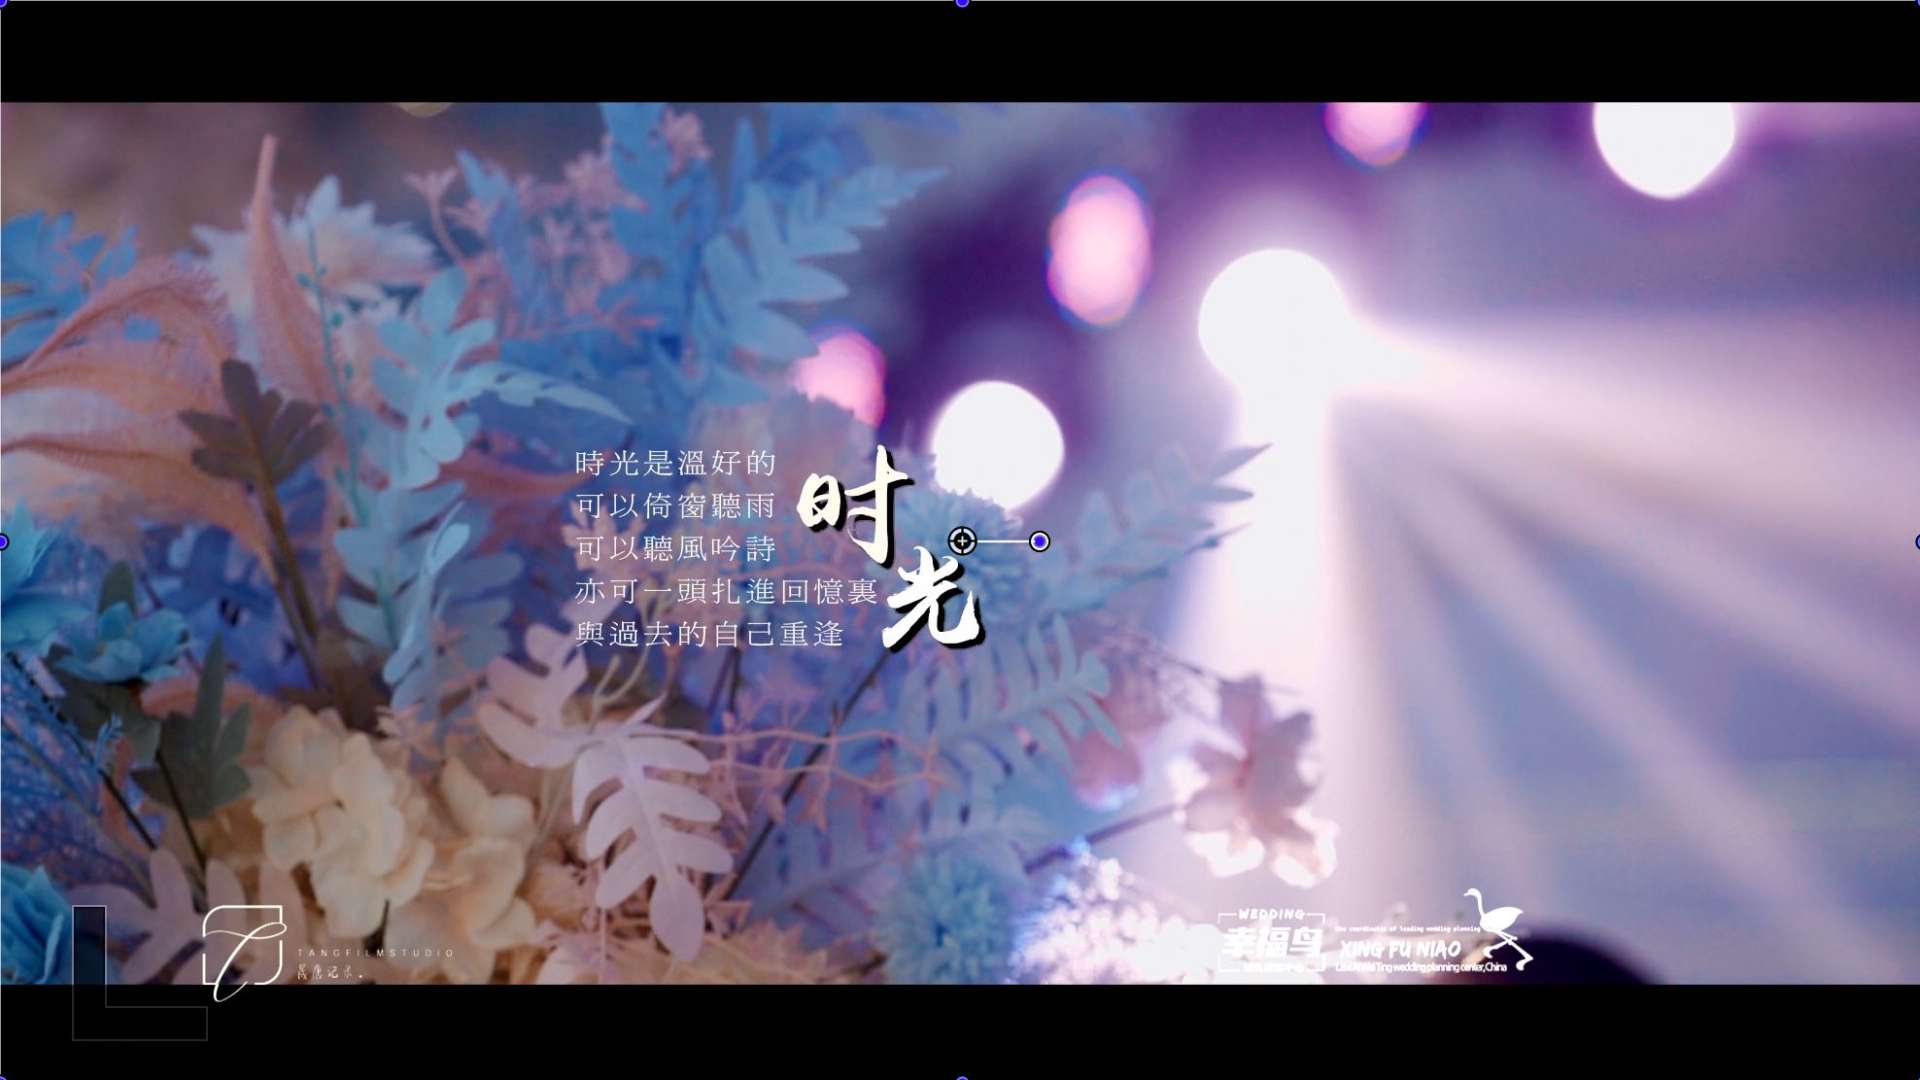 婚礼大电影《时光》-22.5.27幸福鸟婚礼出品